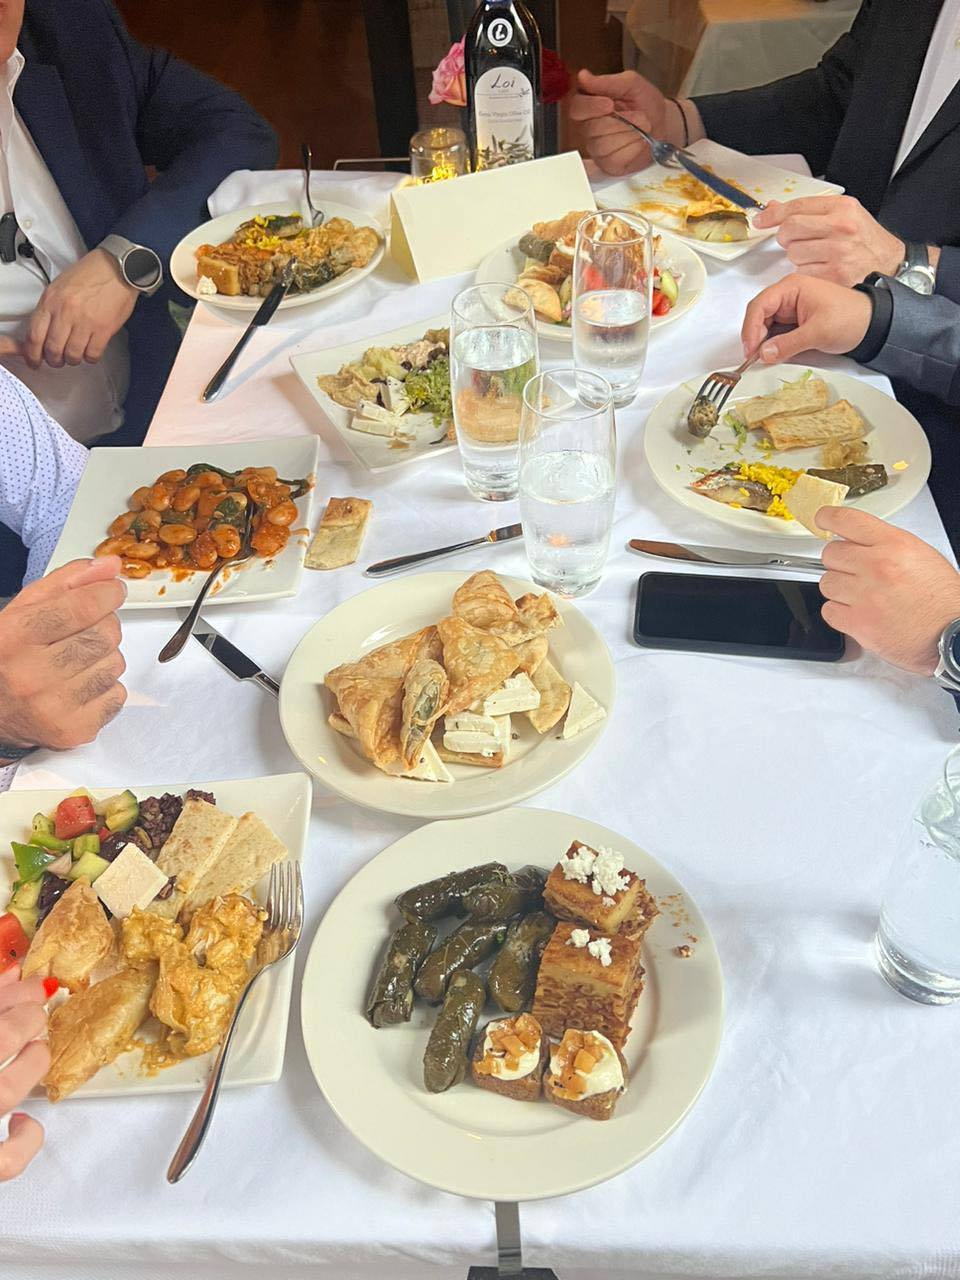 Γ. Κασαπίδης: «Το πρώτο βήμα έγινε. Οι θησαυροί της Δυτικής Μακεδονίας, εντυπωσίασαν και κέρδισαν τις εντυπώσεις με τη γεύση και την ποιοτική ανωτερότητα τους επισκέπτες και τις επιχειρήσεις τροφίμων στη Διεθνή Έκθεση Τροφίμων «Summer Fancy Food Show» στη Νέα Υόρκη»